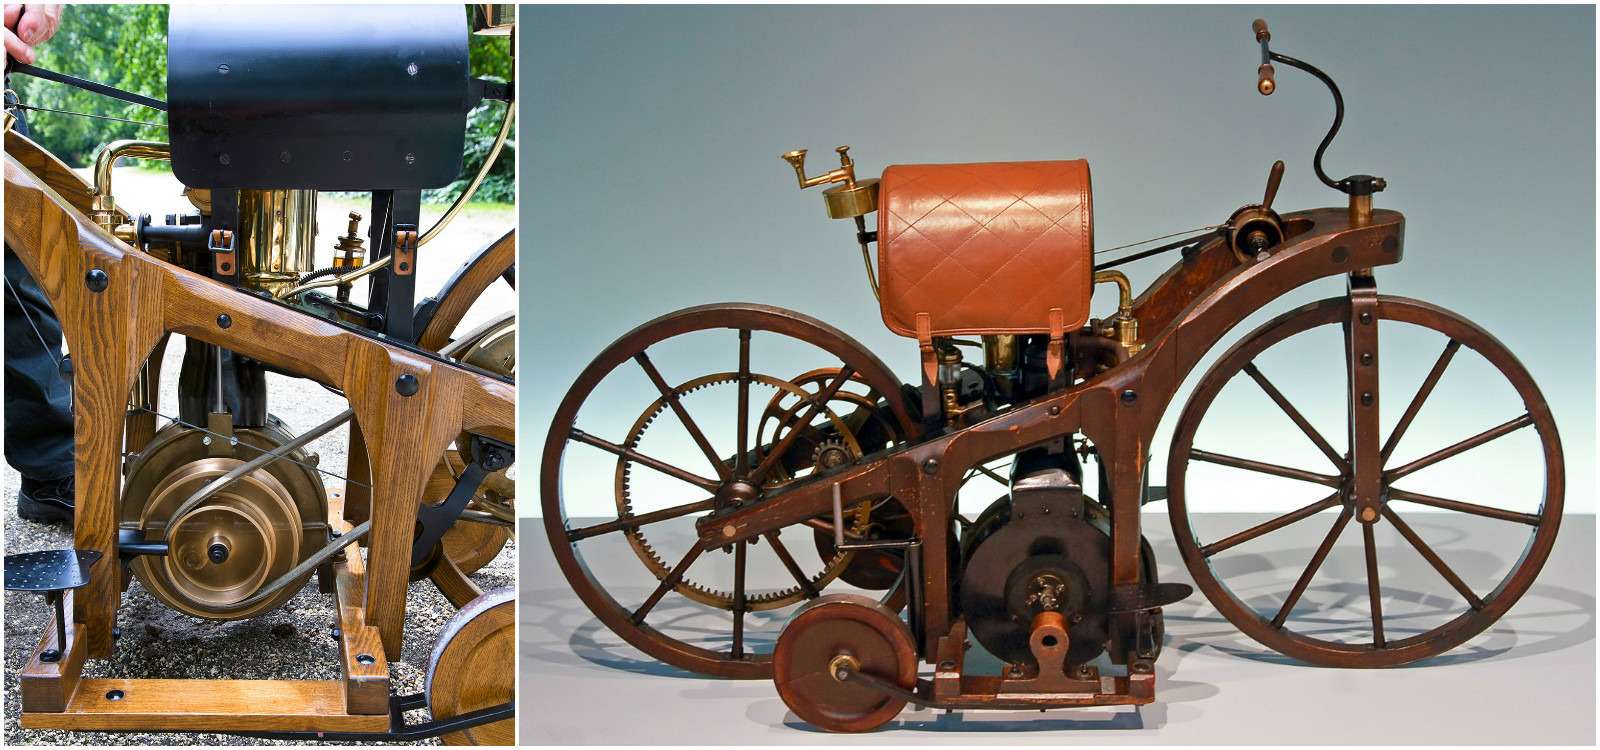 Мотоцикл Даймлера 1885 года, первый жизнеспособный экипаж с бензиновым мотором, на трехкилометровом отрезке достиг, как утверждали очевидцы, скорости 12 км/ч. Привод на заднее колесо – ременный, но уже можно менять передачи!